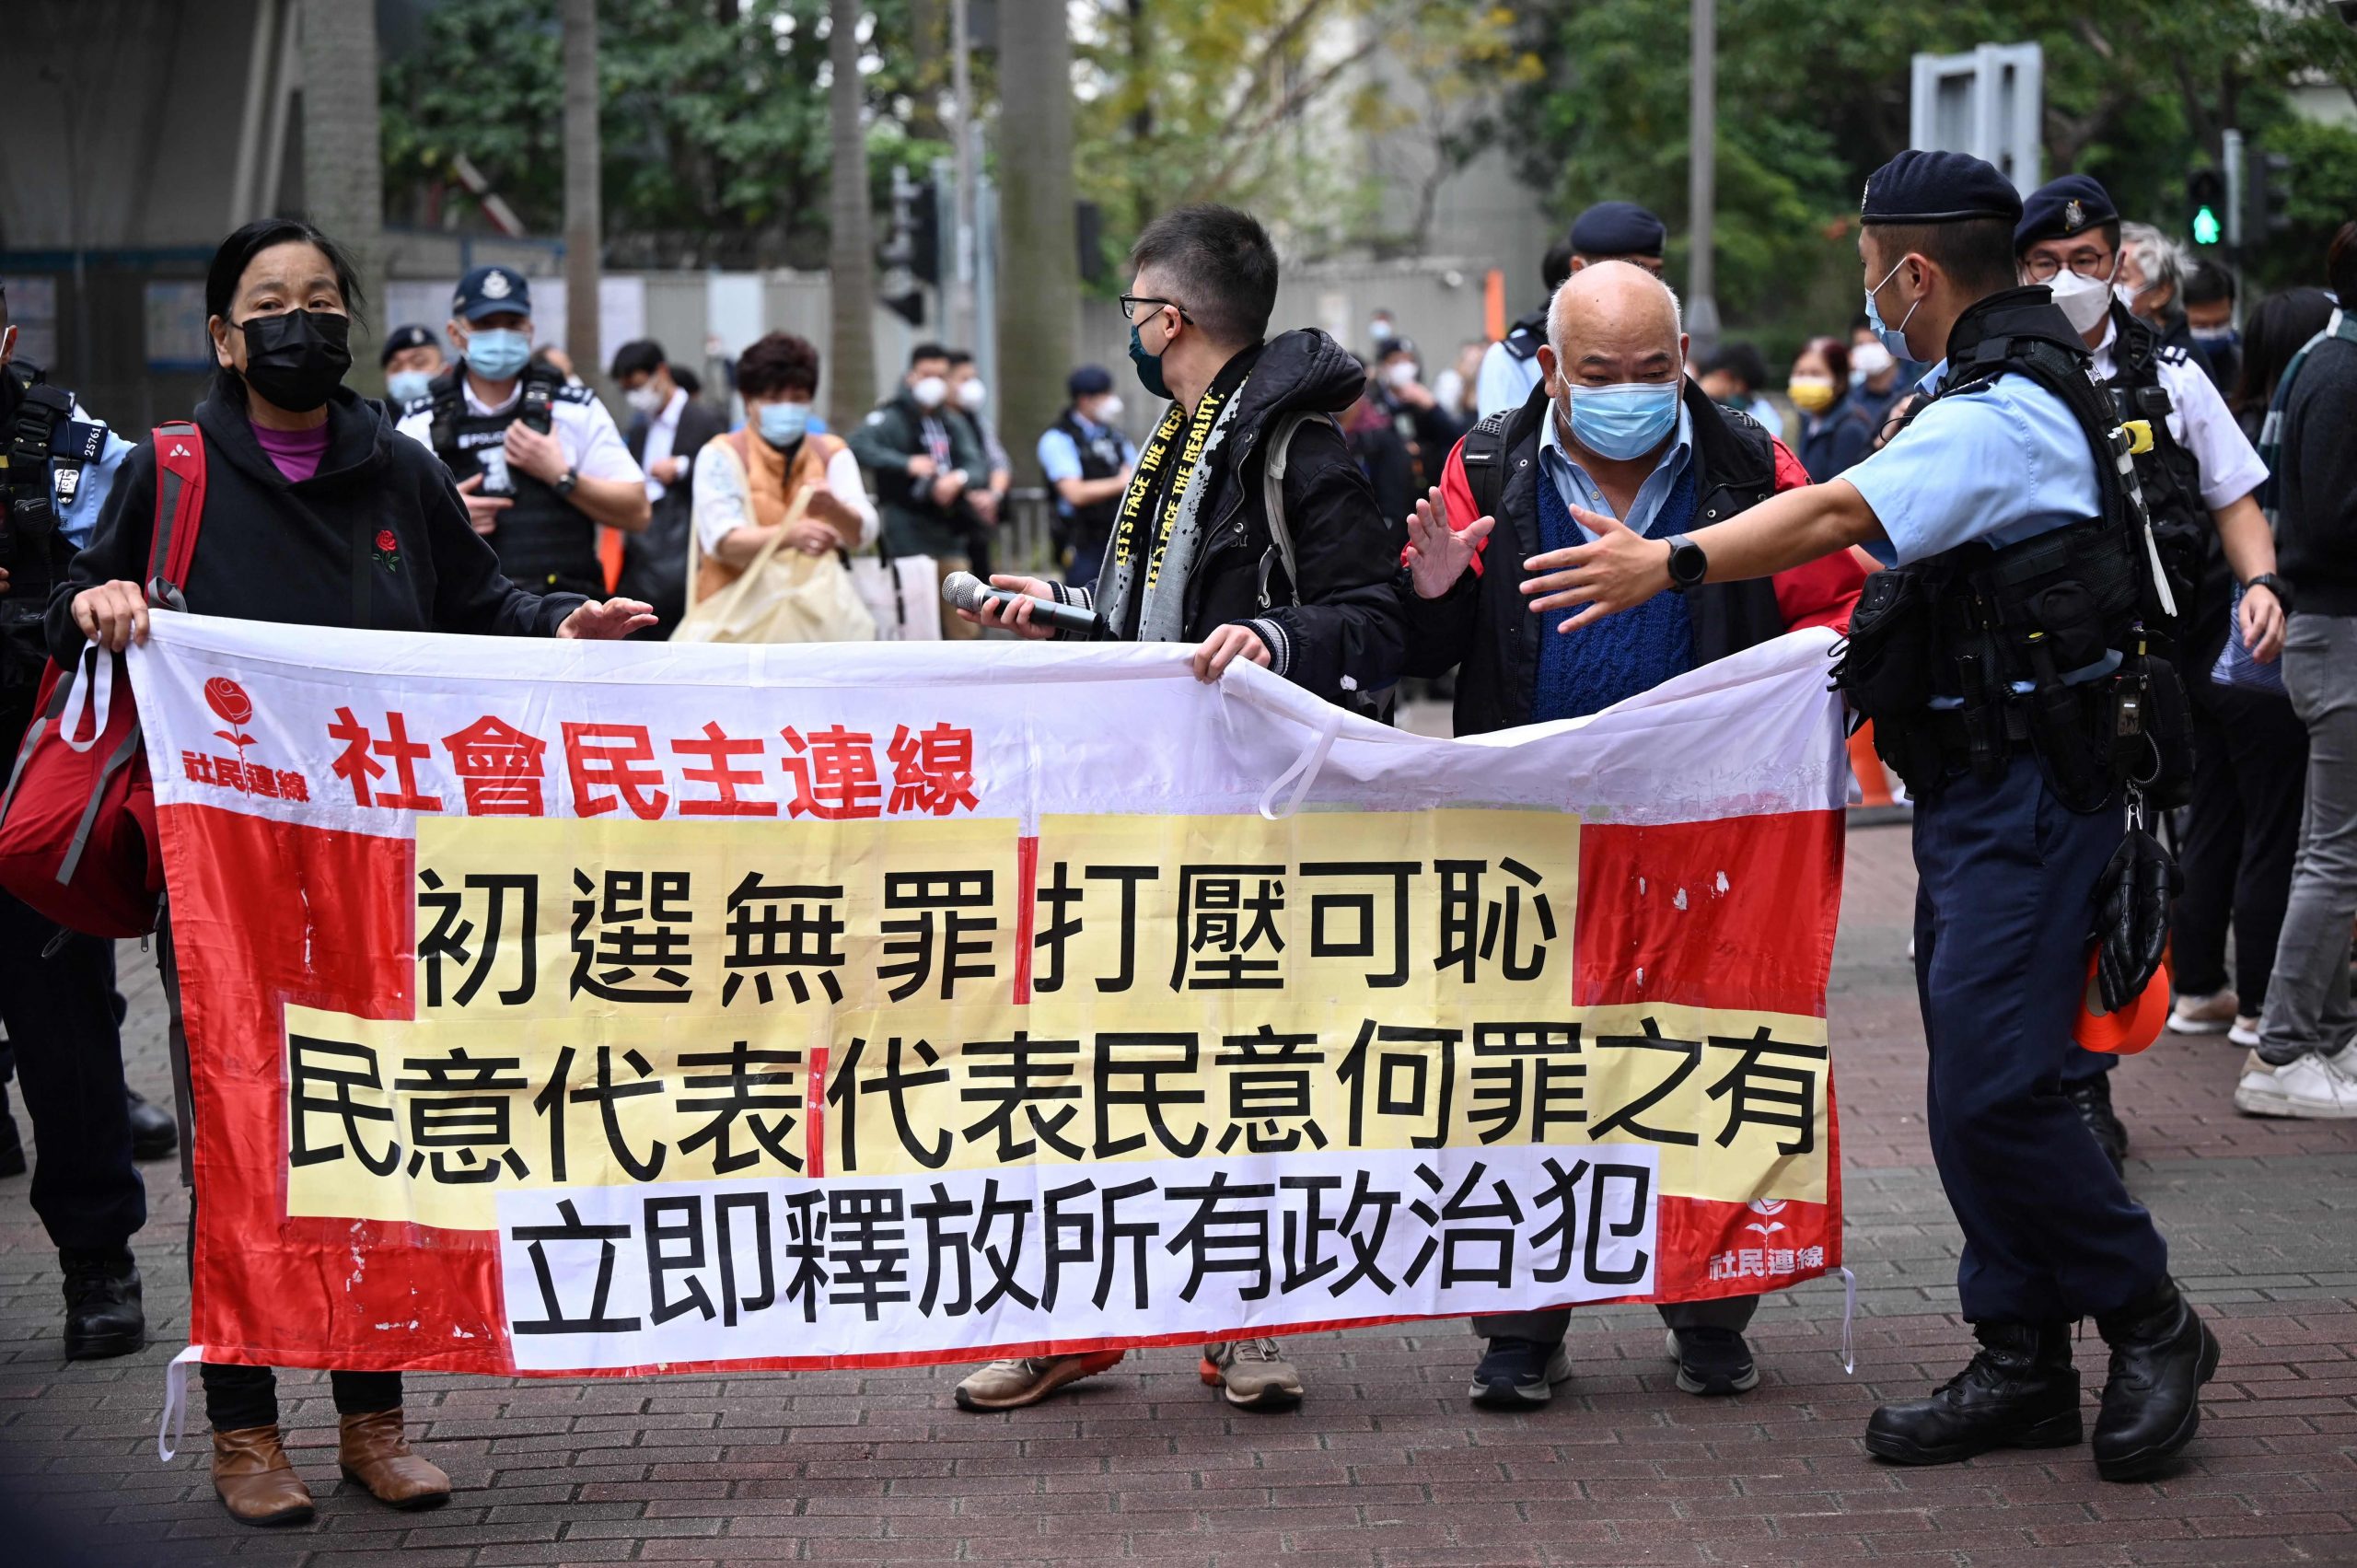 香港民主派初选案47人受审 国安法下最大规模